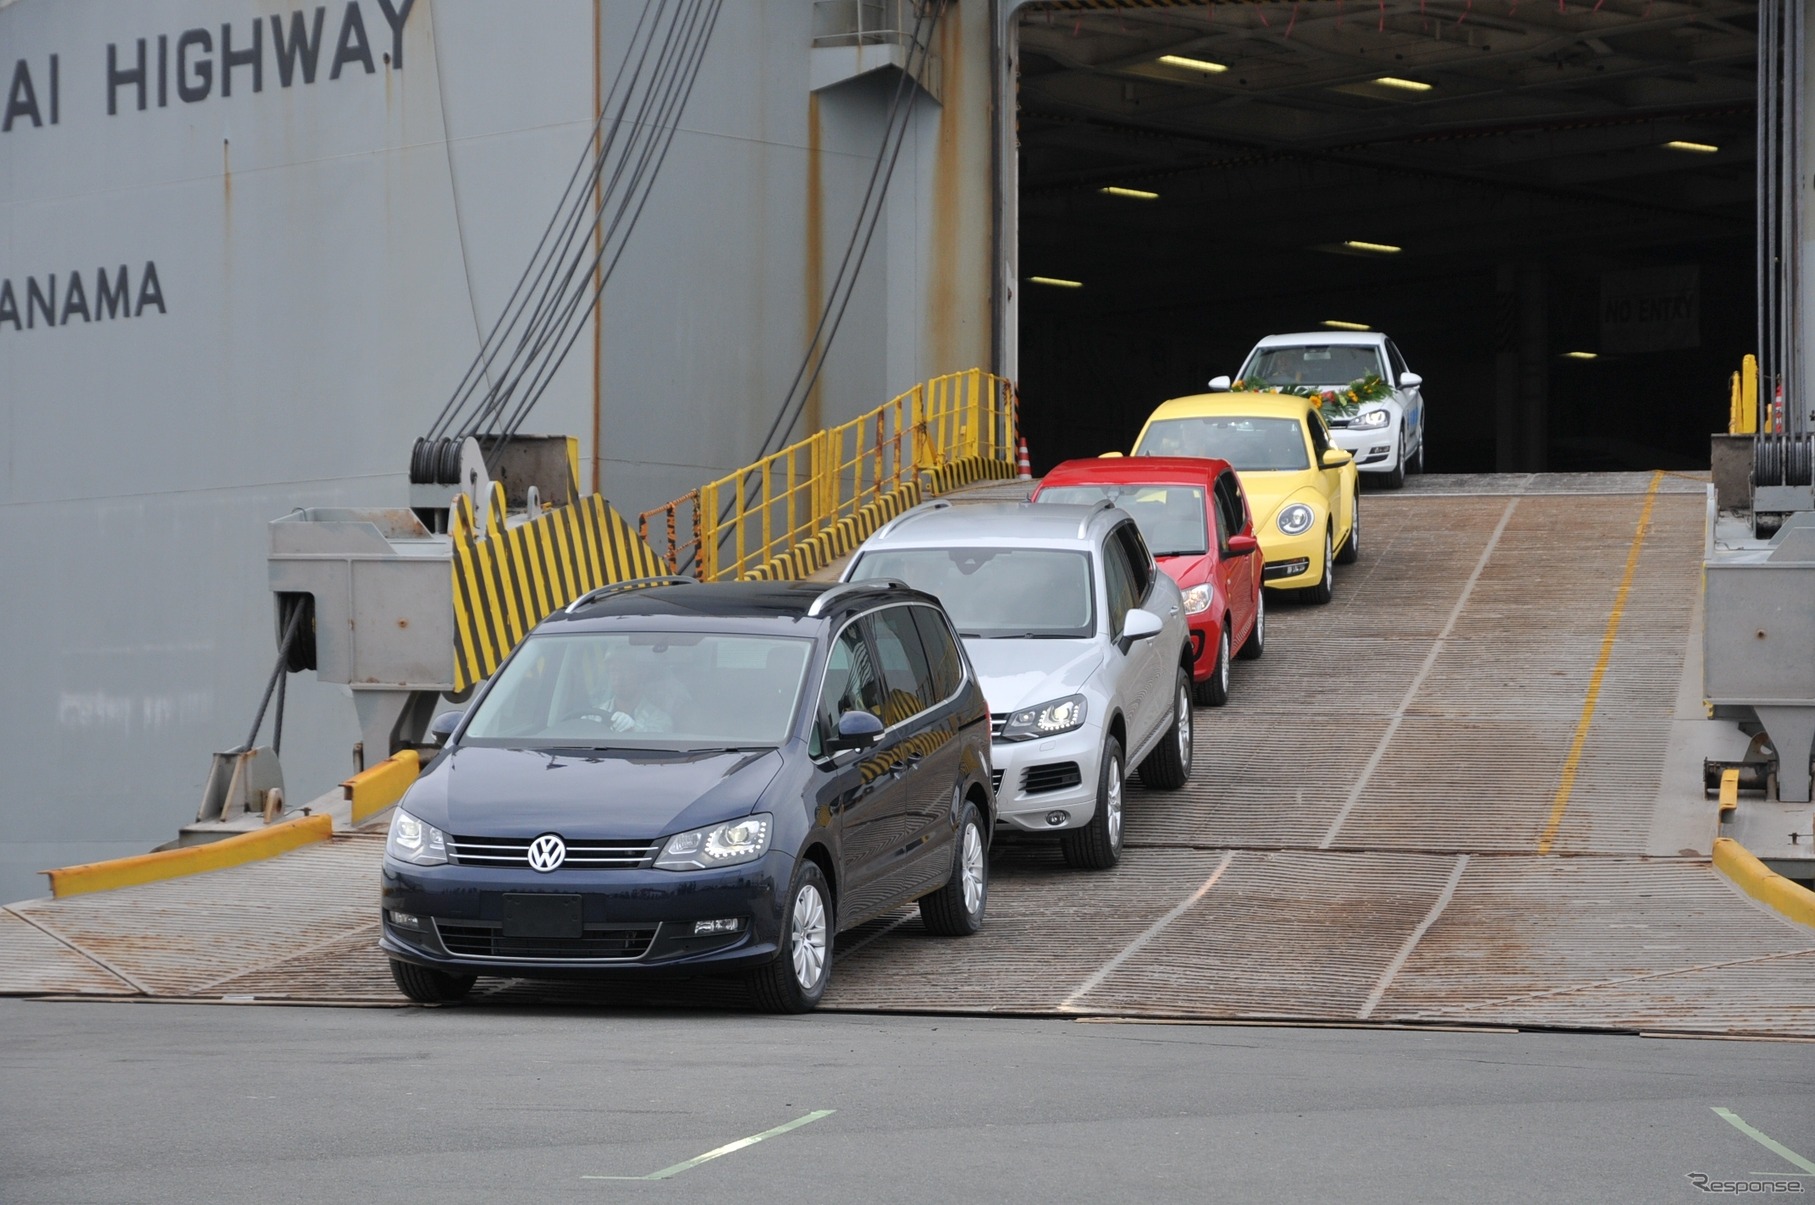 7月17日、自動車専用船「シャンハイ ハイウェイ号」から陸揚げされるVW車。今回、同船から合計1454台のVW車が陸揚げされた